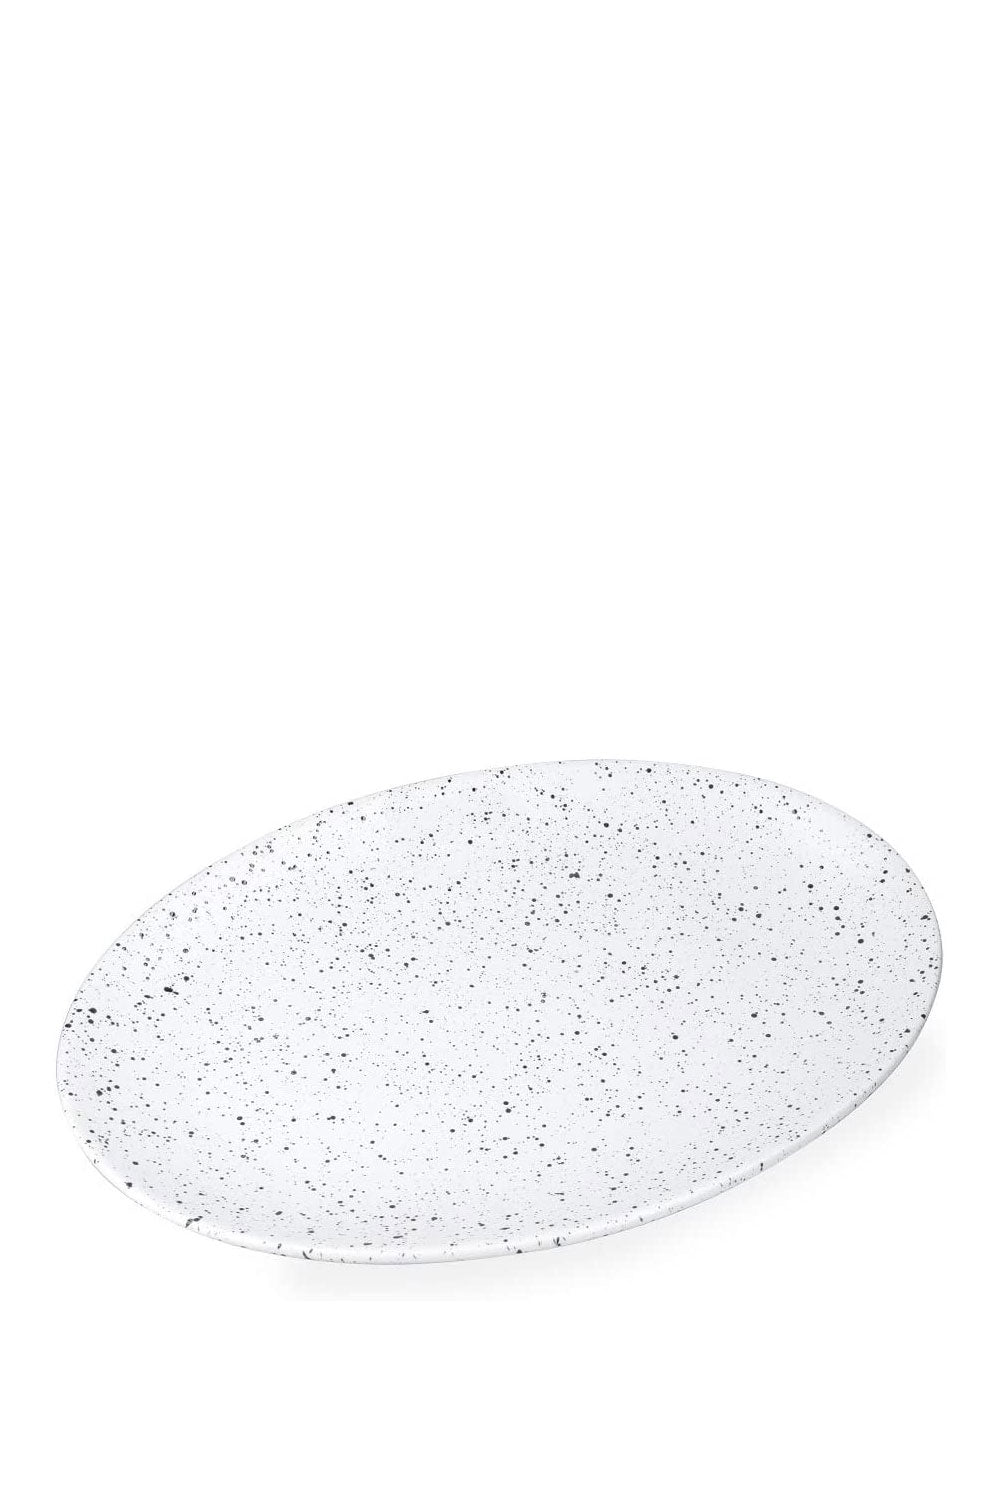 Caviar Speckle Oval Plate 35 x 25 cm - Maison7